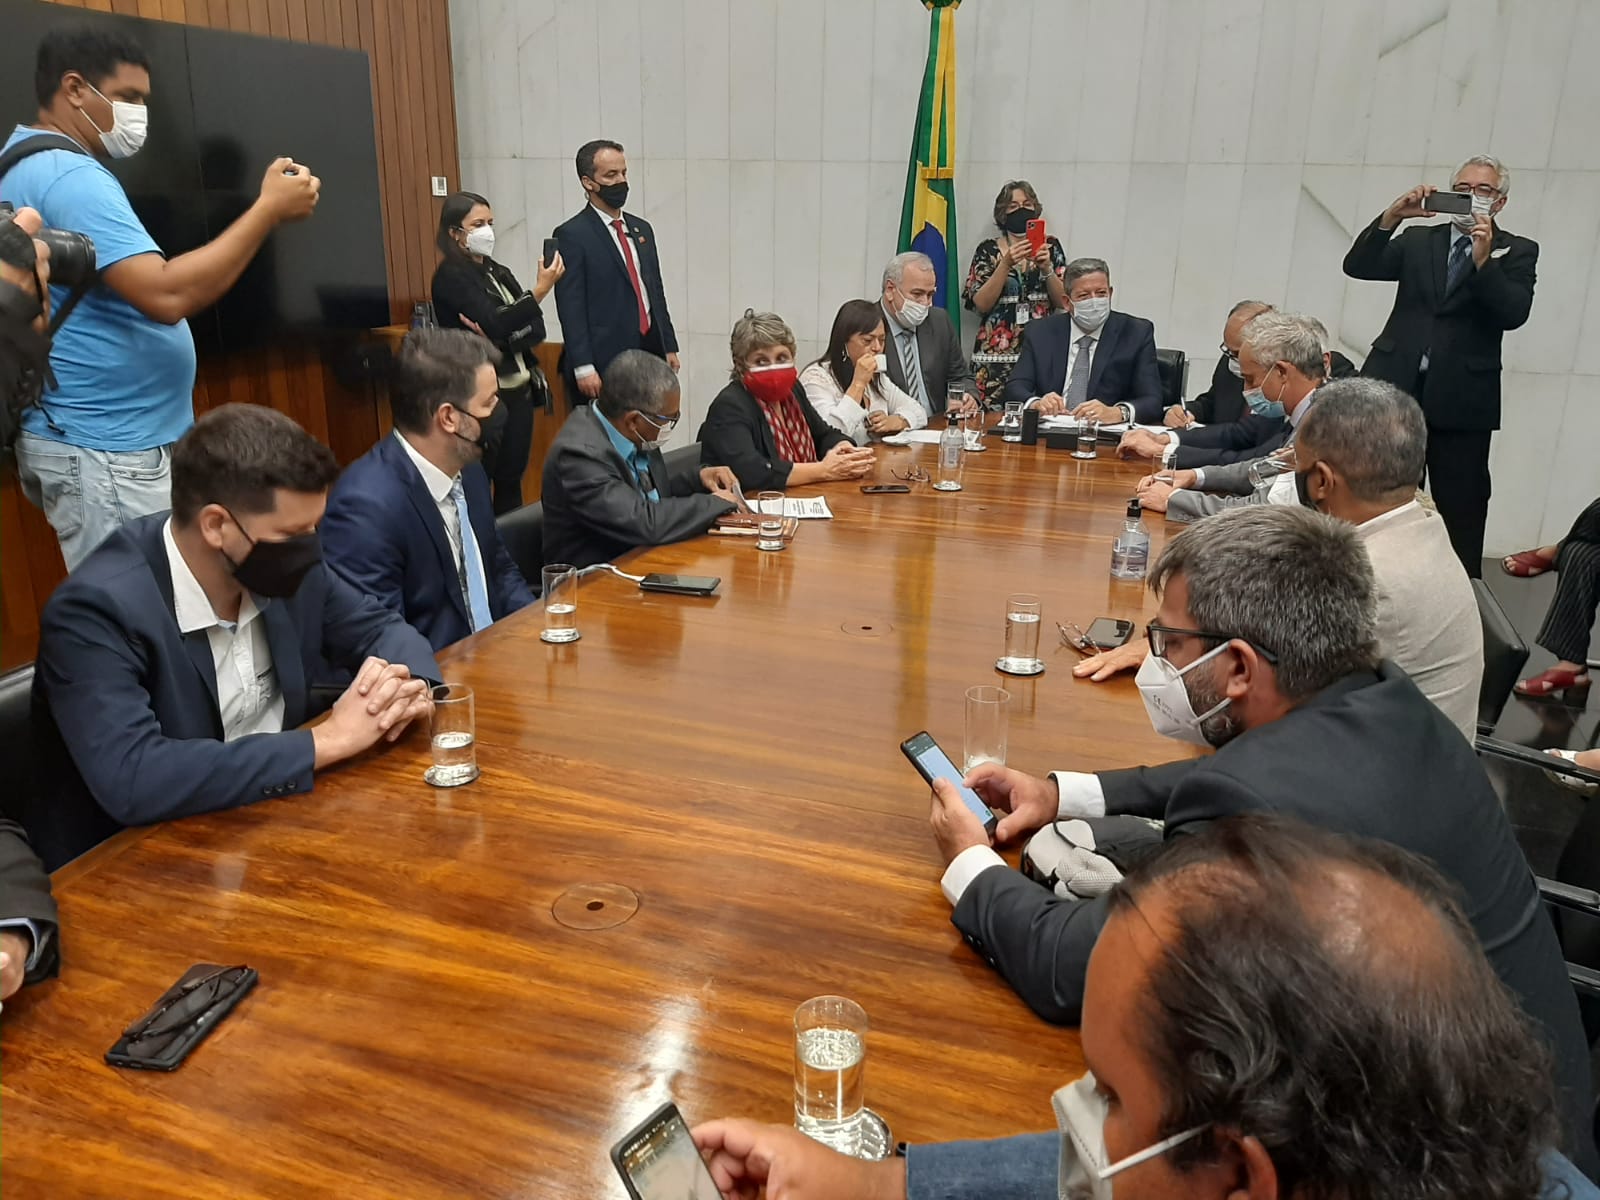 Representantes das centrais sindicais pressionaram o presidente da Câmara dos Deputados, Arthur Lira, a retirar a PEC 32 durante audiência em Brasília